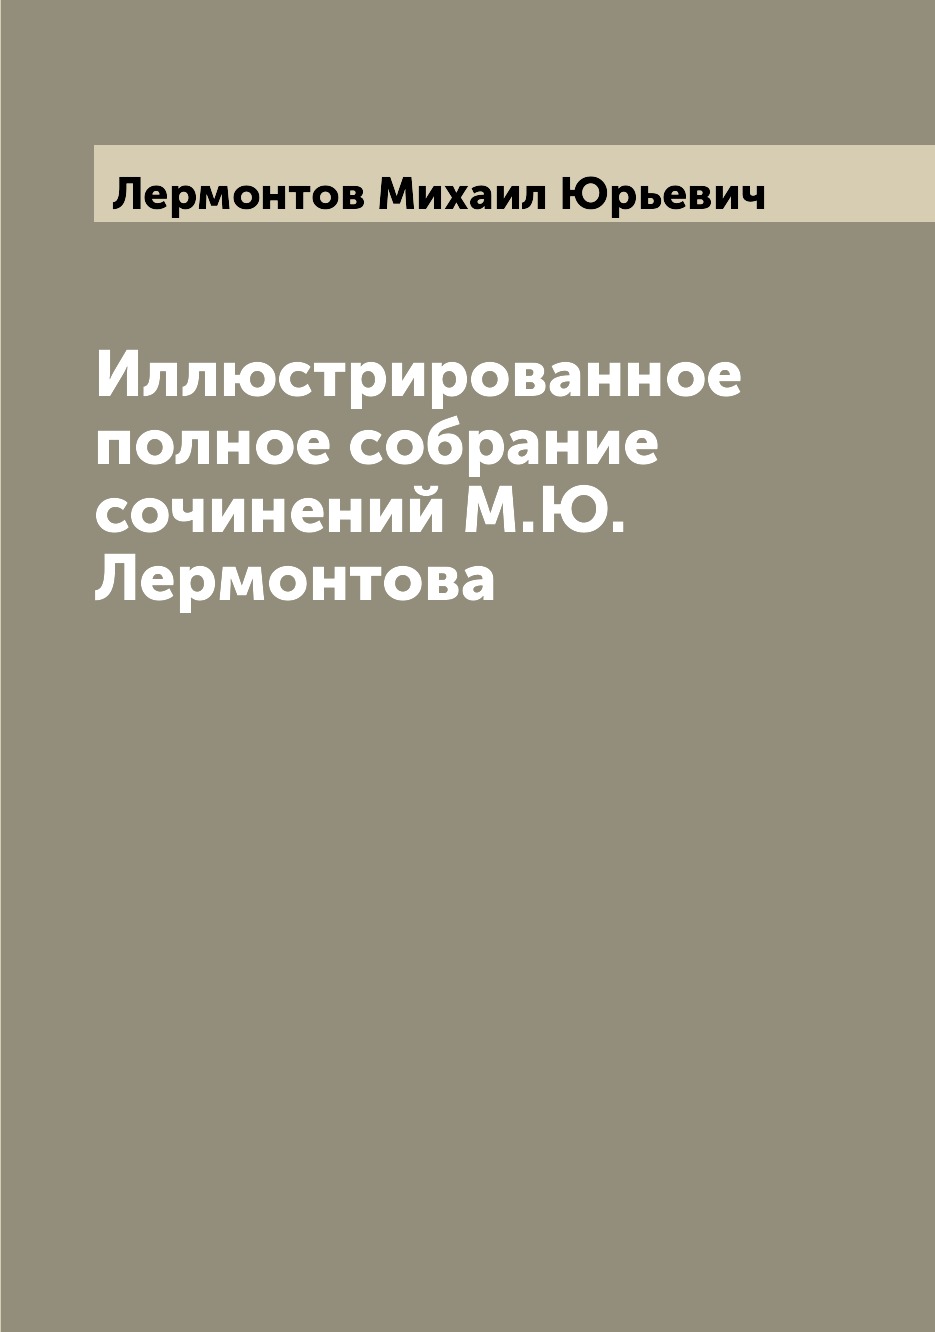 фото Книга иллюстрированное полное собрание сочинений м.ю. лермонтова archive publica